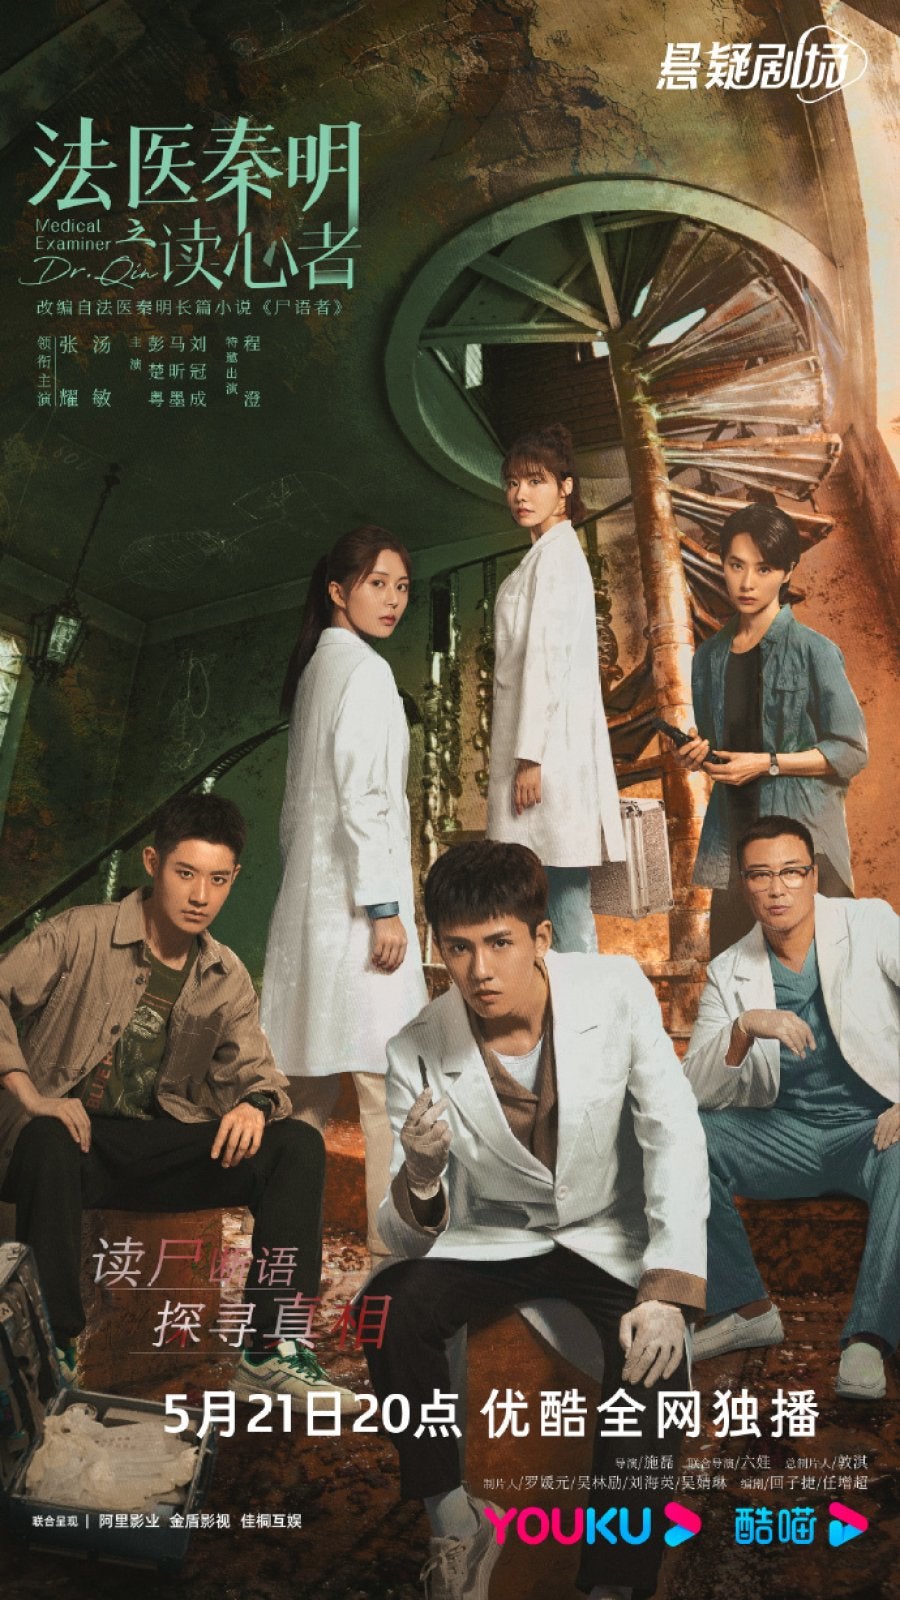 TV ratings for Medical Examiner Dr. Qin: The Mind Reader (法医秦明之读心者) in Argentina. Youku TV series